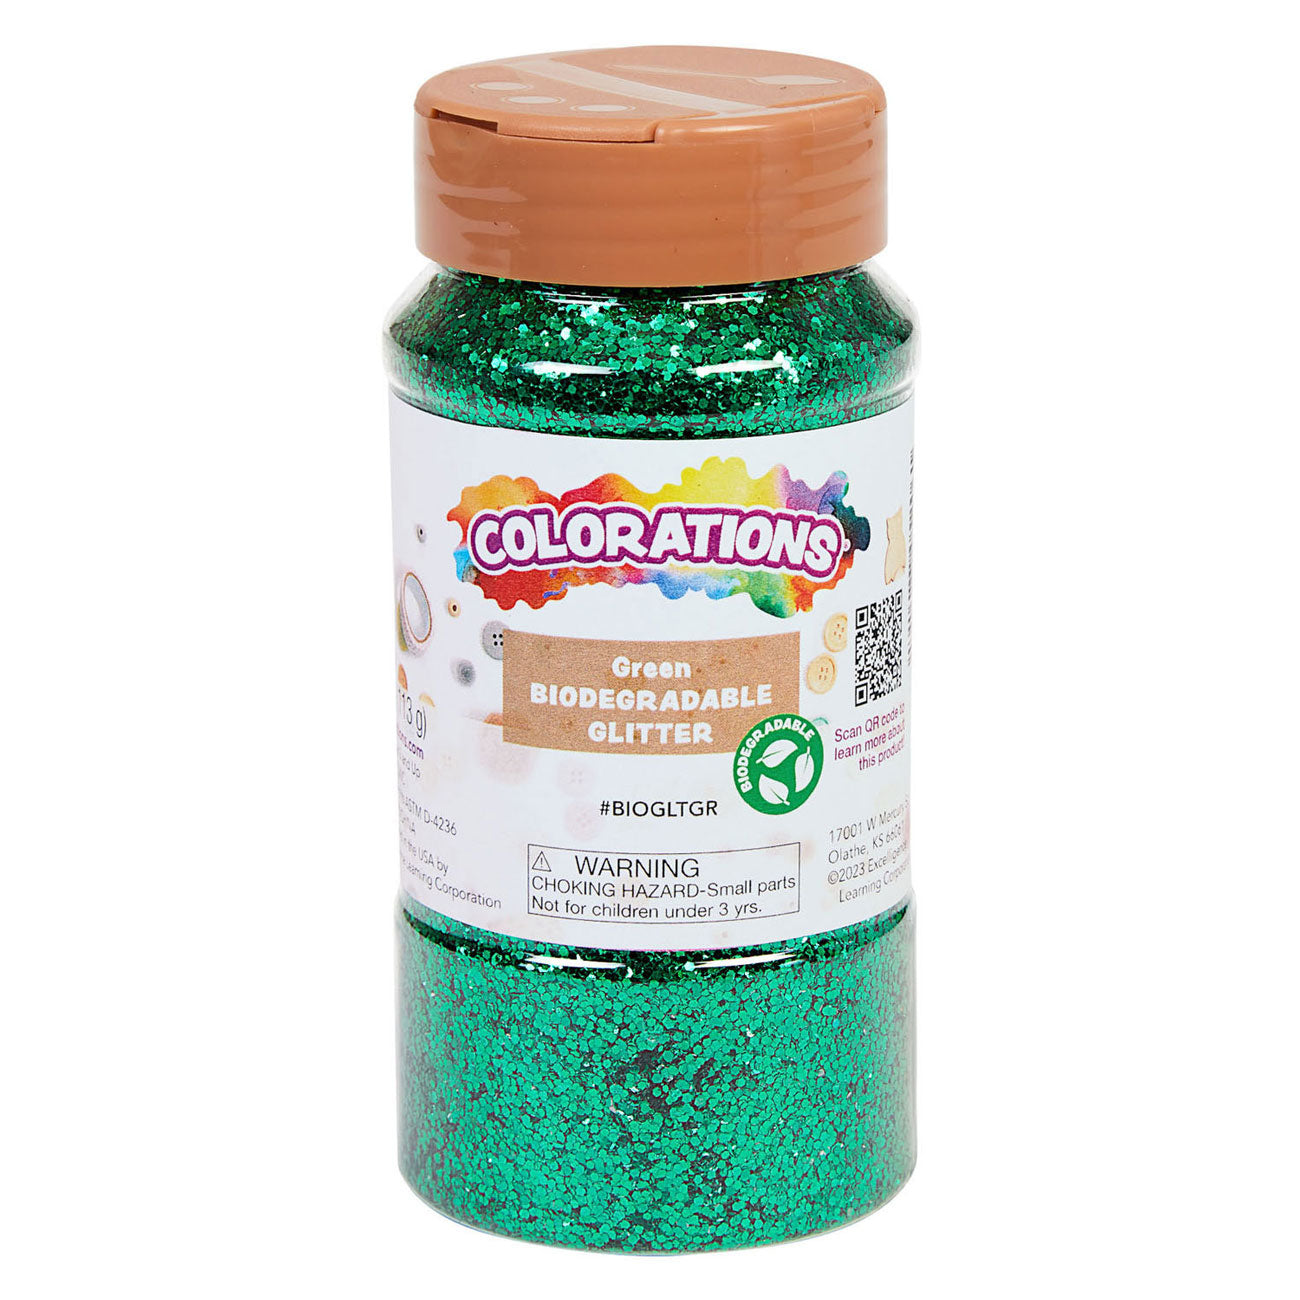 Coloraciones Glitter degradable orgánico Green, 113 gramos